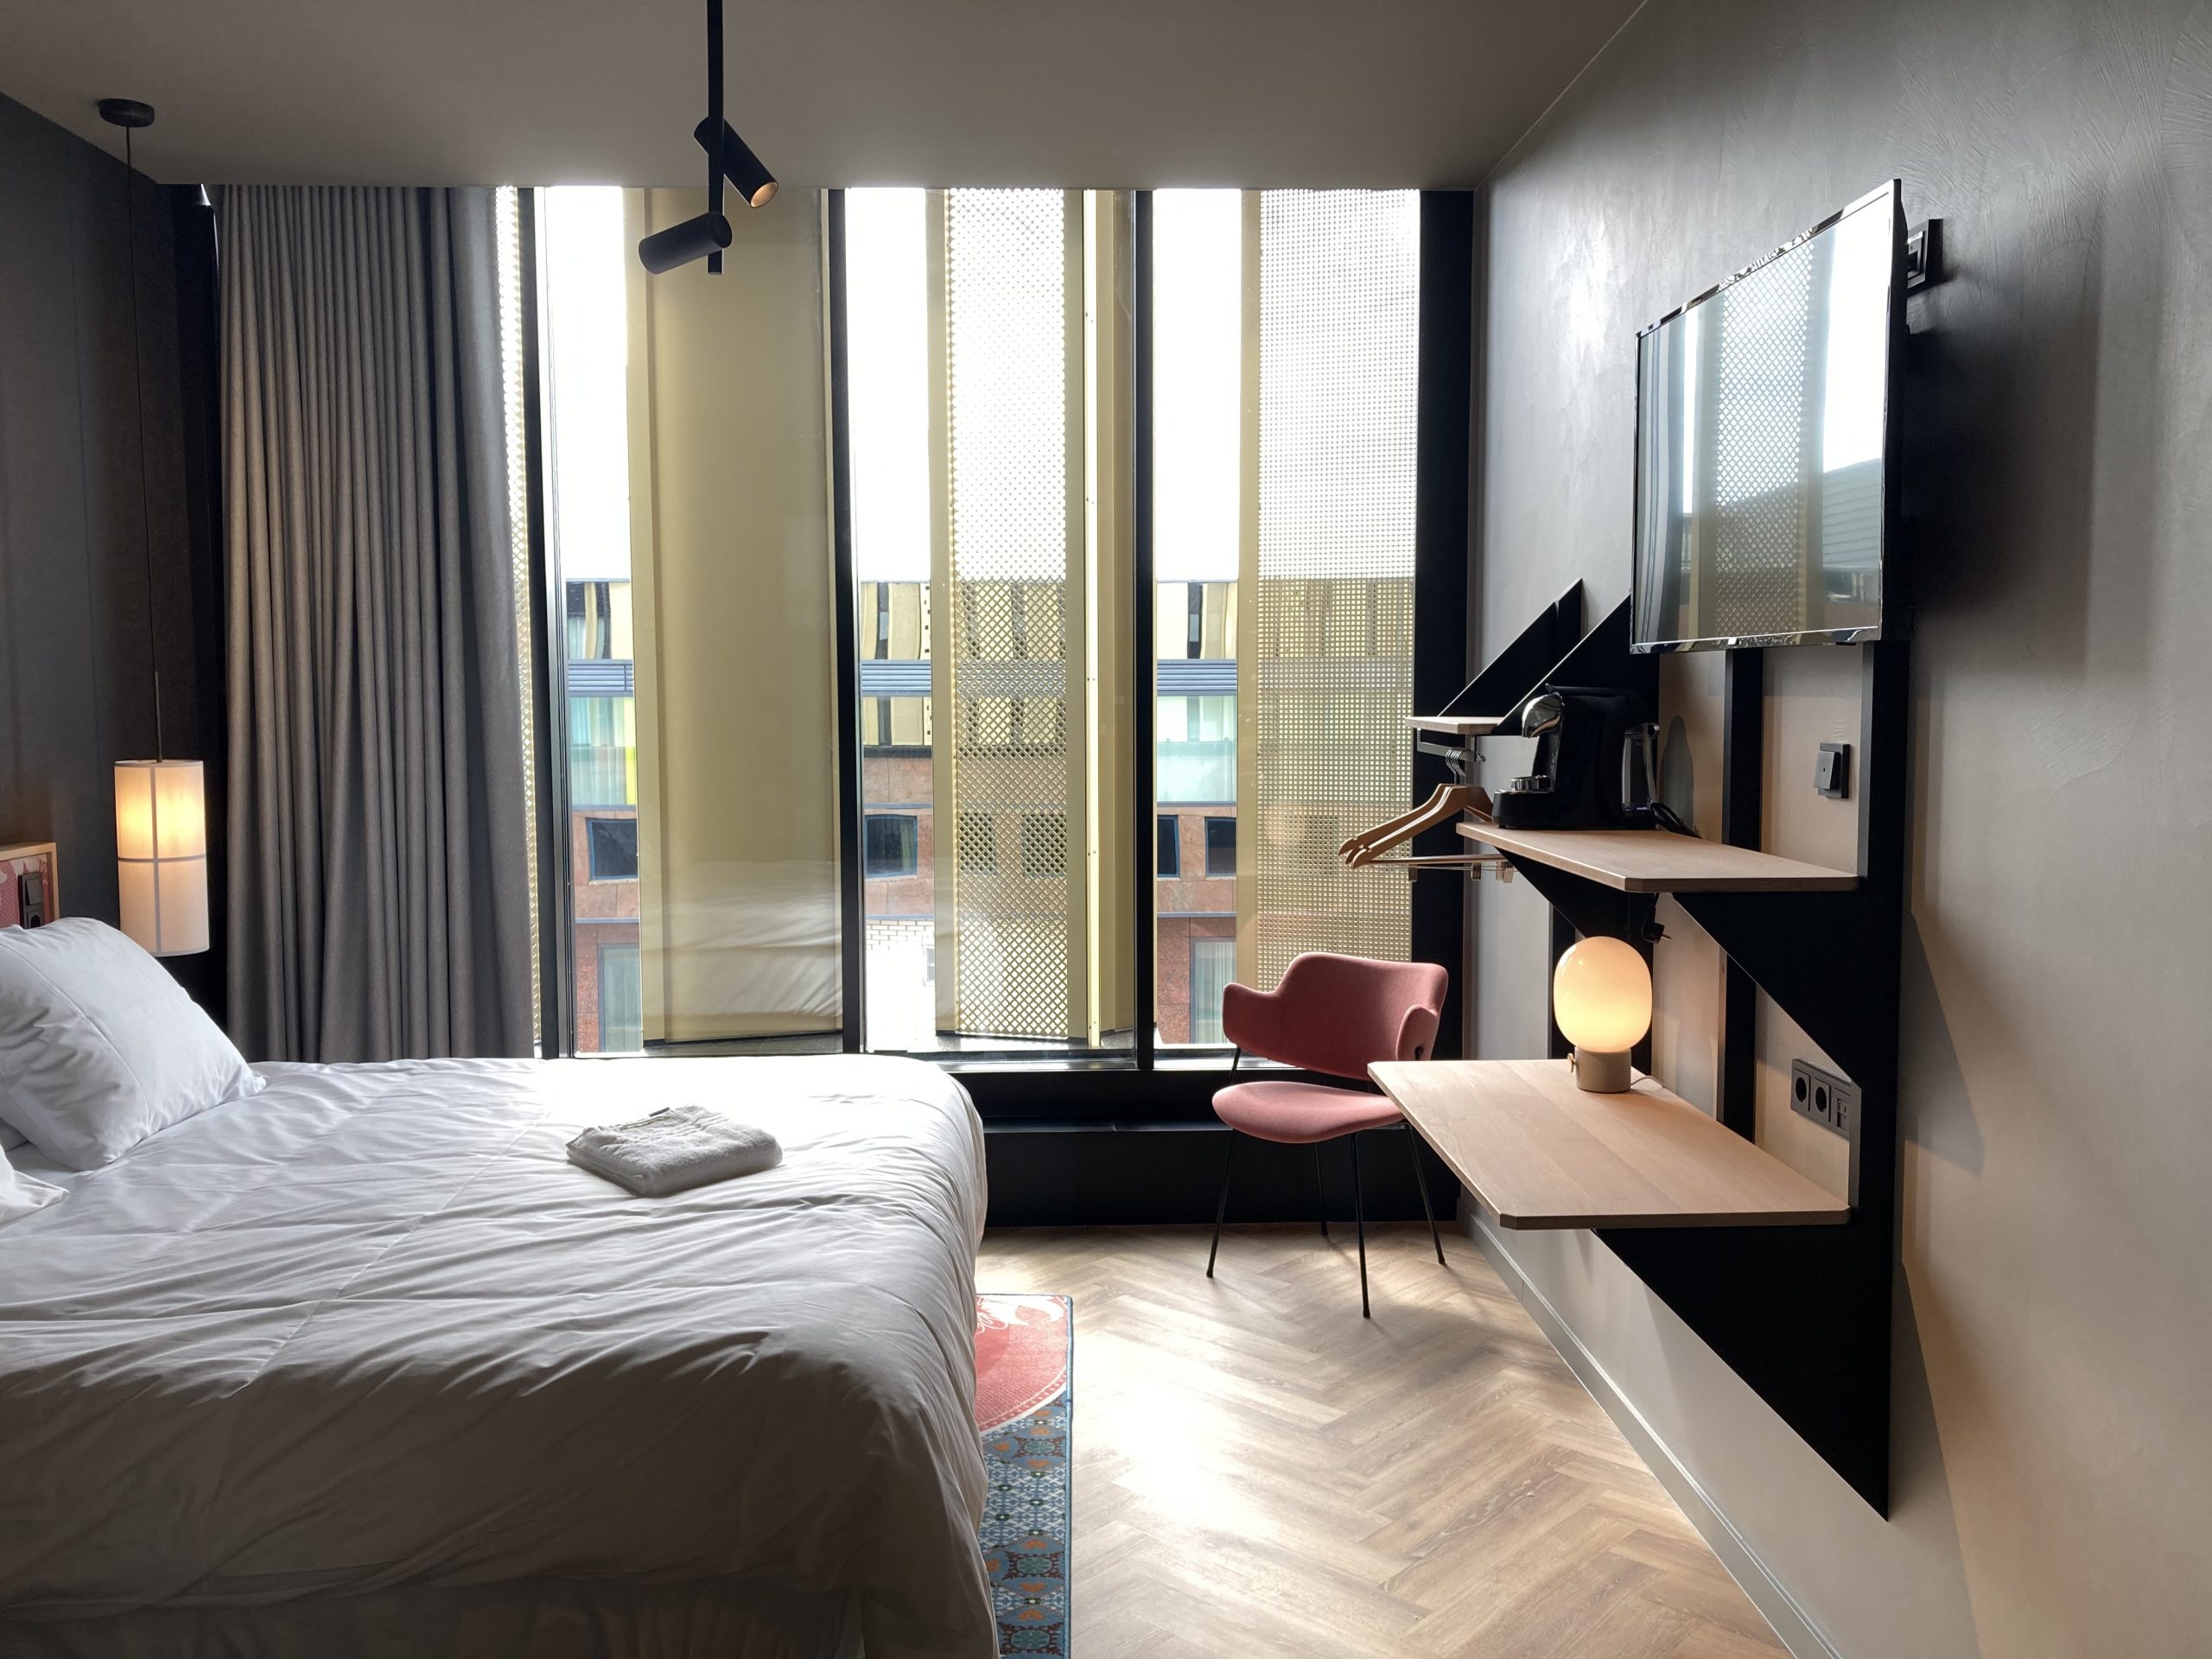 The Florian Hotels   Hoogendoorn MBI (9)